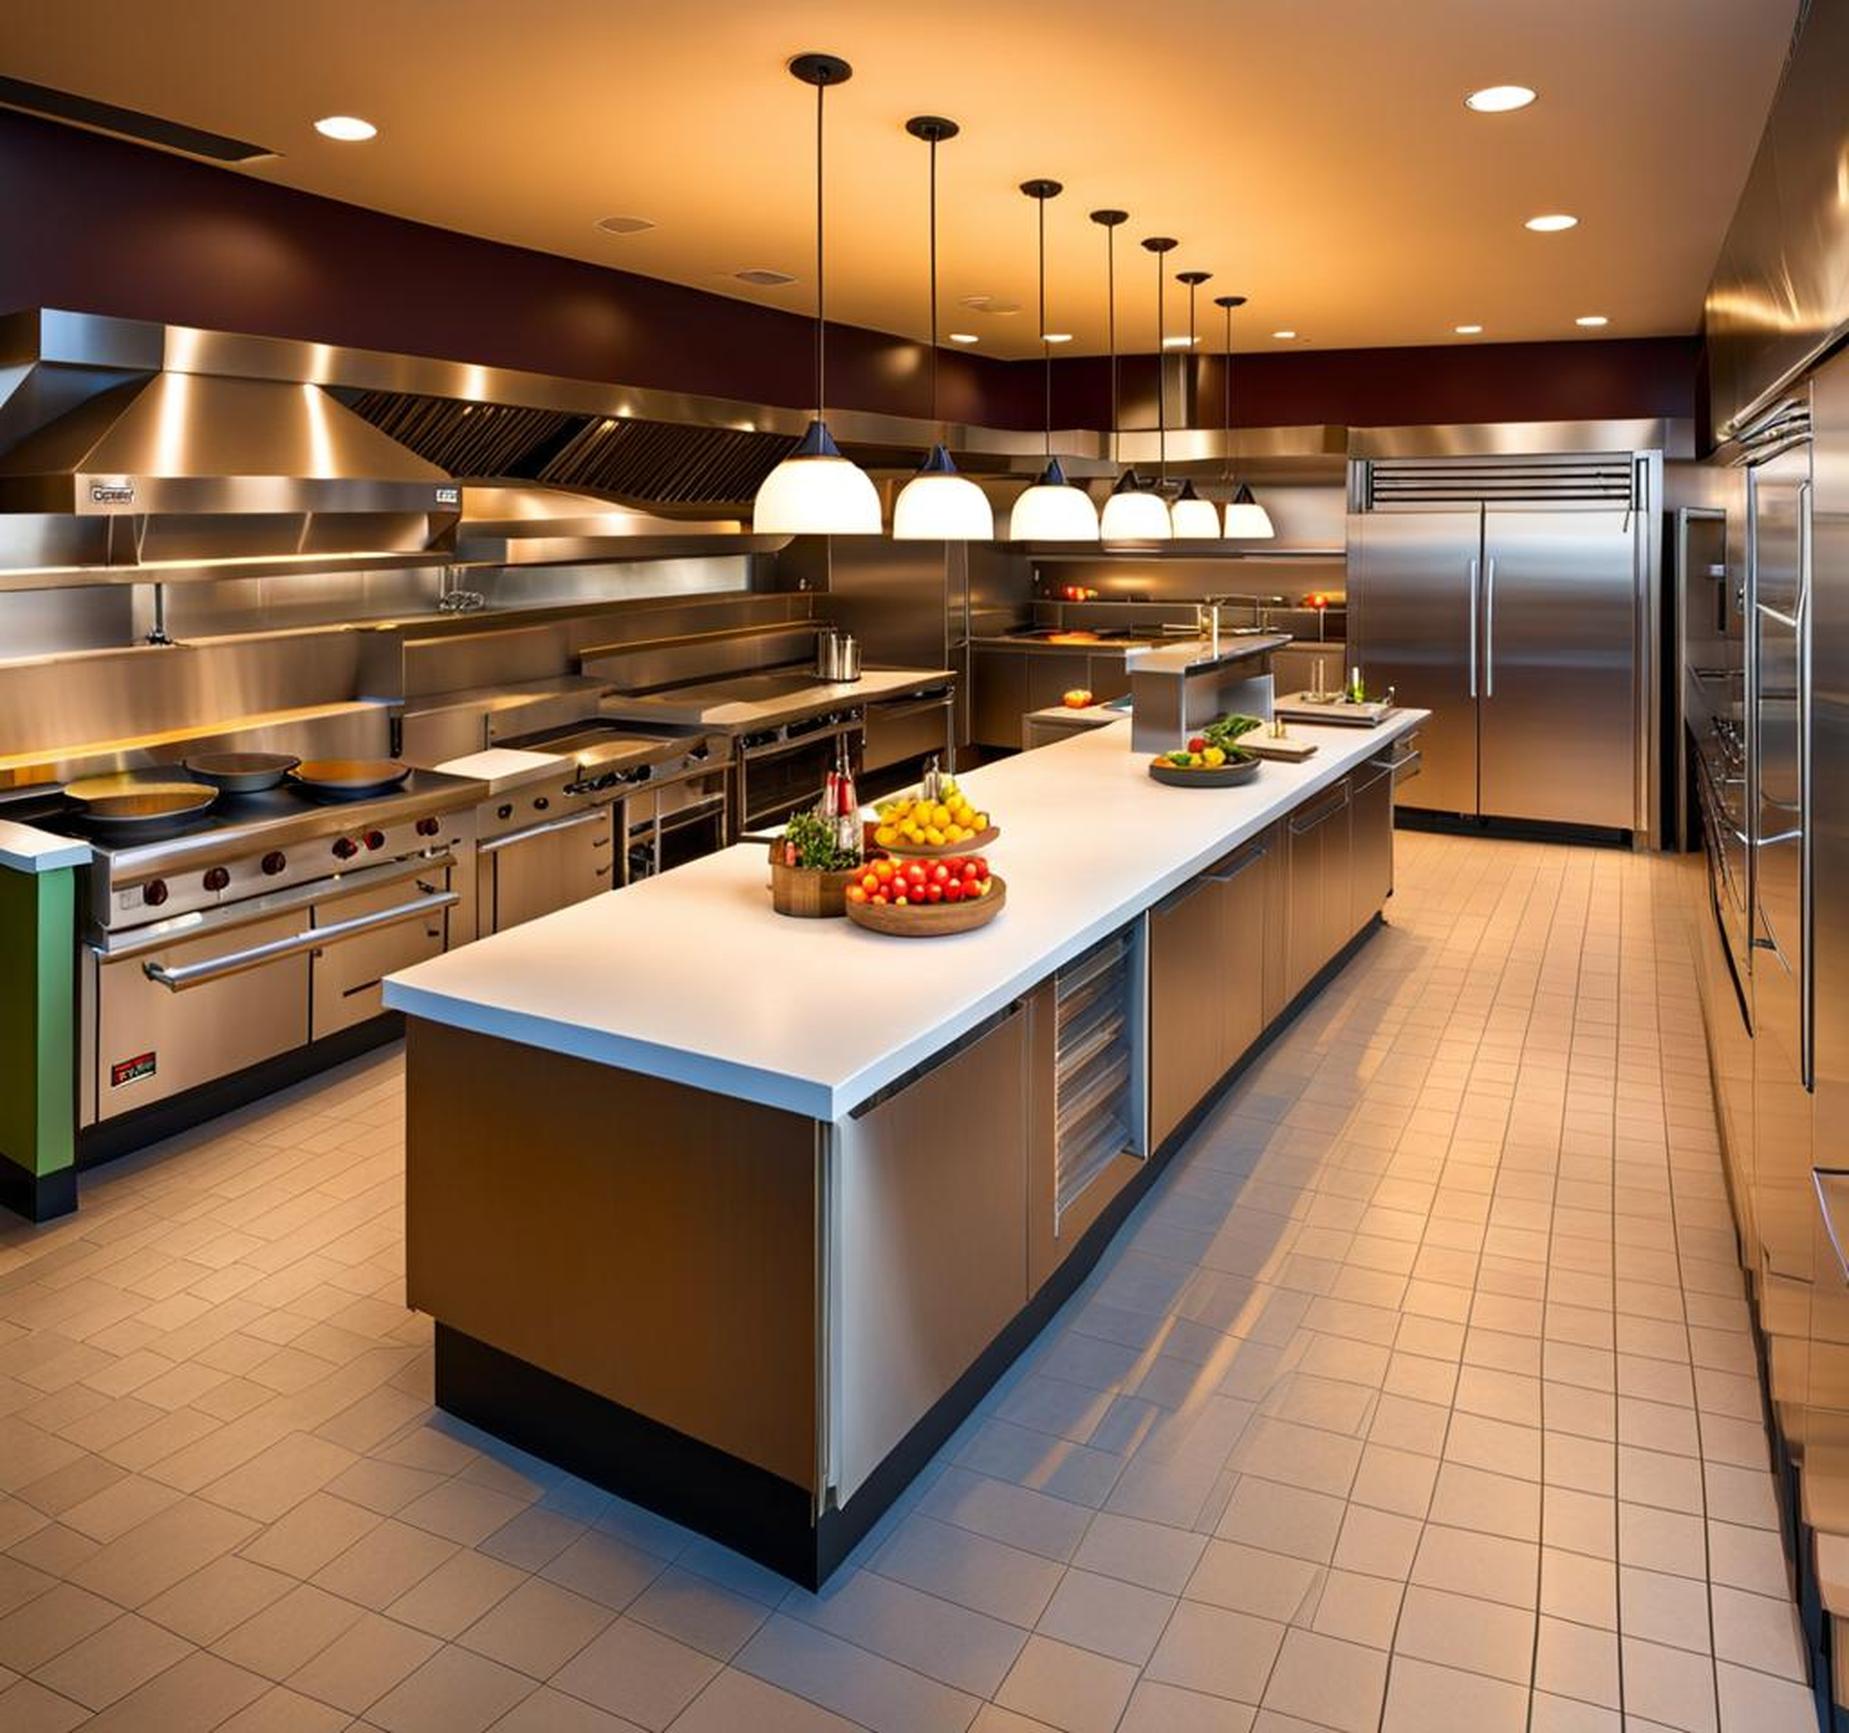 restaurant kitchen flooring requirements